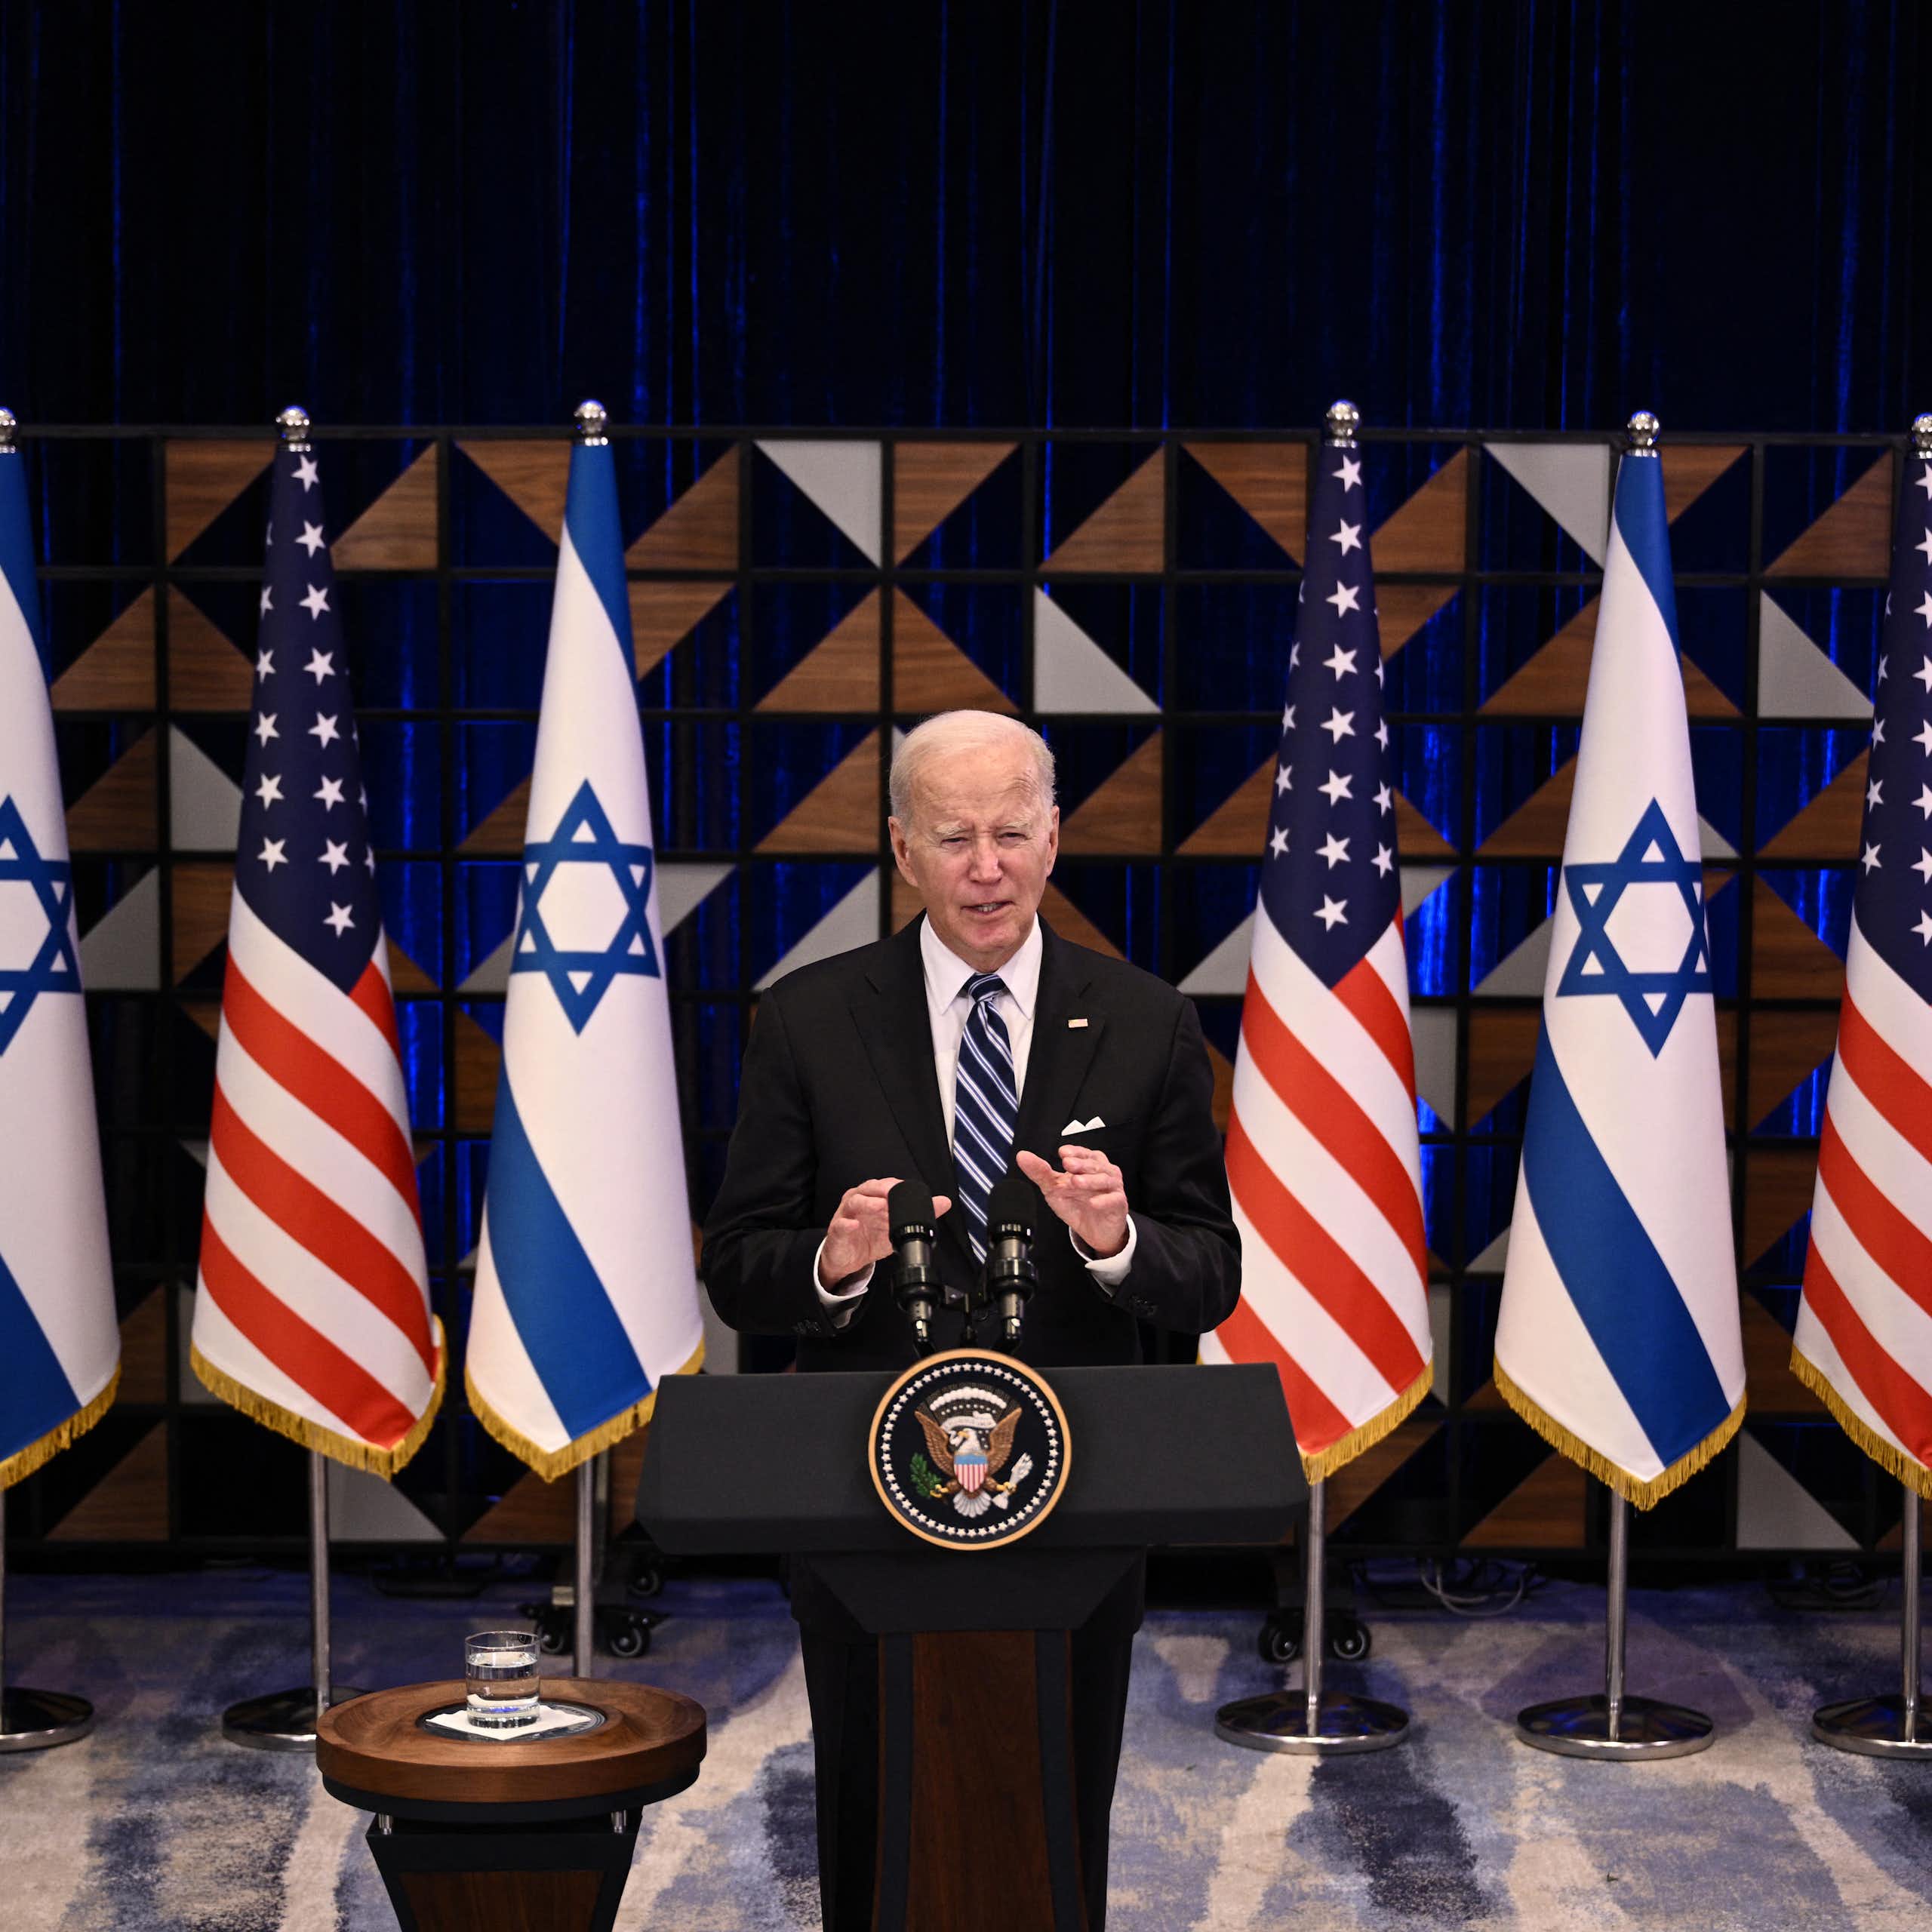 Joe Biden s'exprime sur une estrade devant des drapeaux américains et israéliens